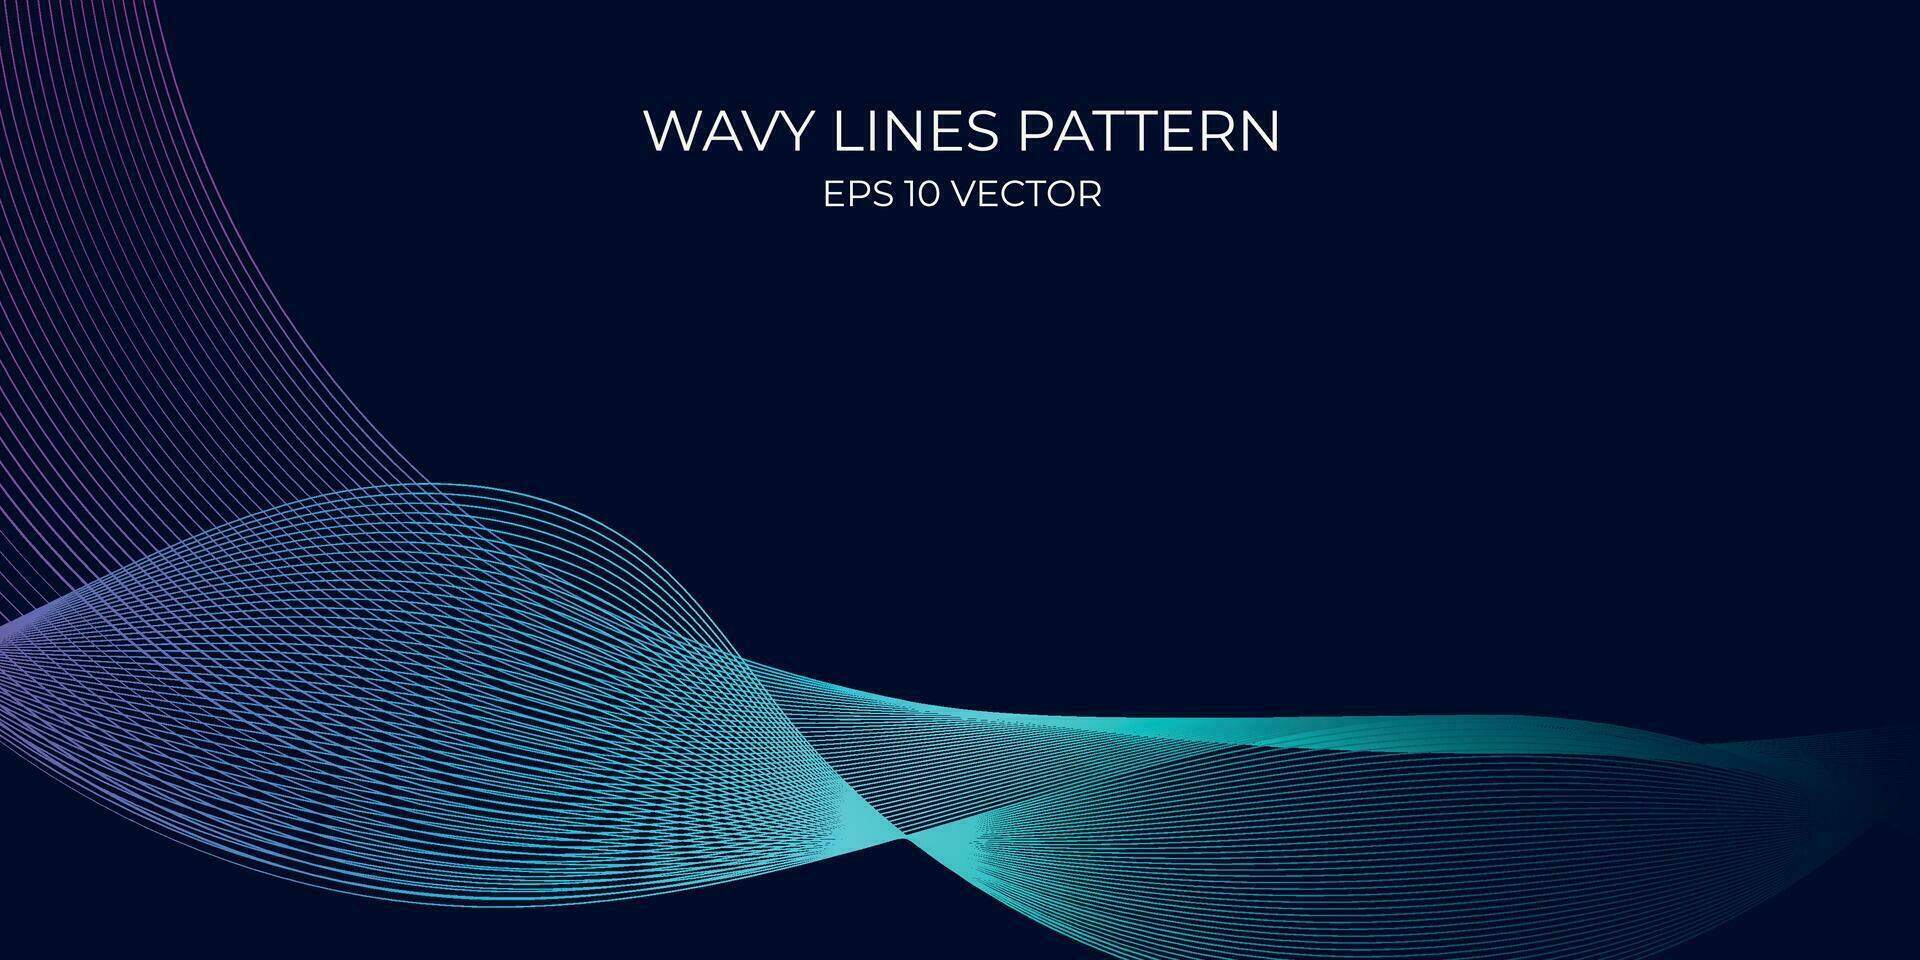 Vektor wellig Linien Muster glatt Kurve fließend dynamisch Blau Grün Gradient Licht isoliert auf Marine Hintergrund. Konzept zum Technologie, Digital, Kommunikation, Wissenschaft, Musik.